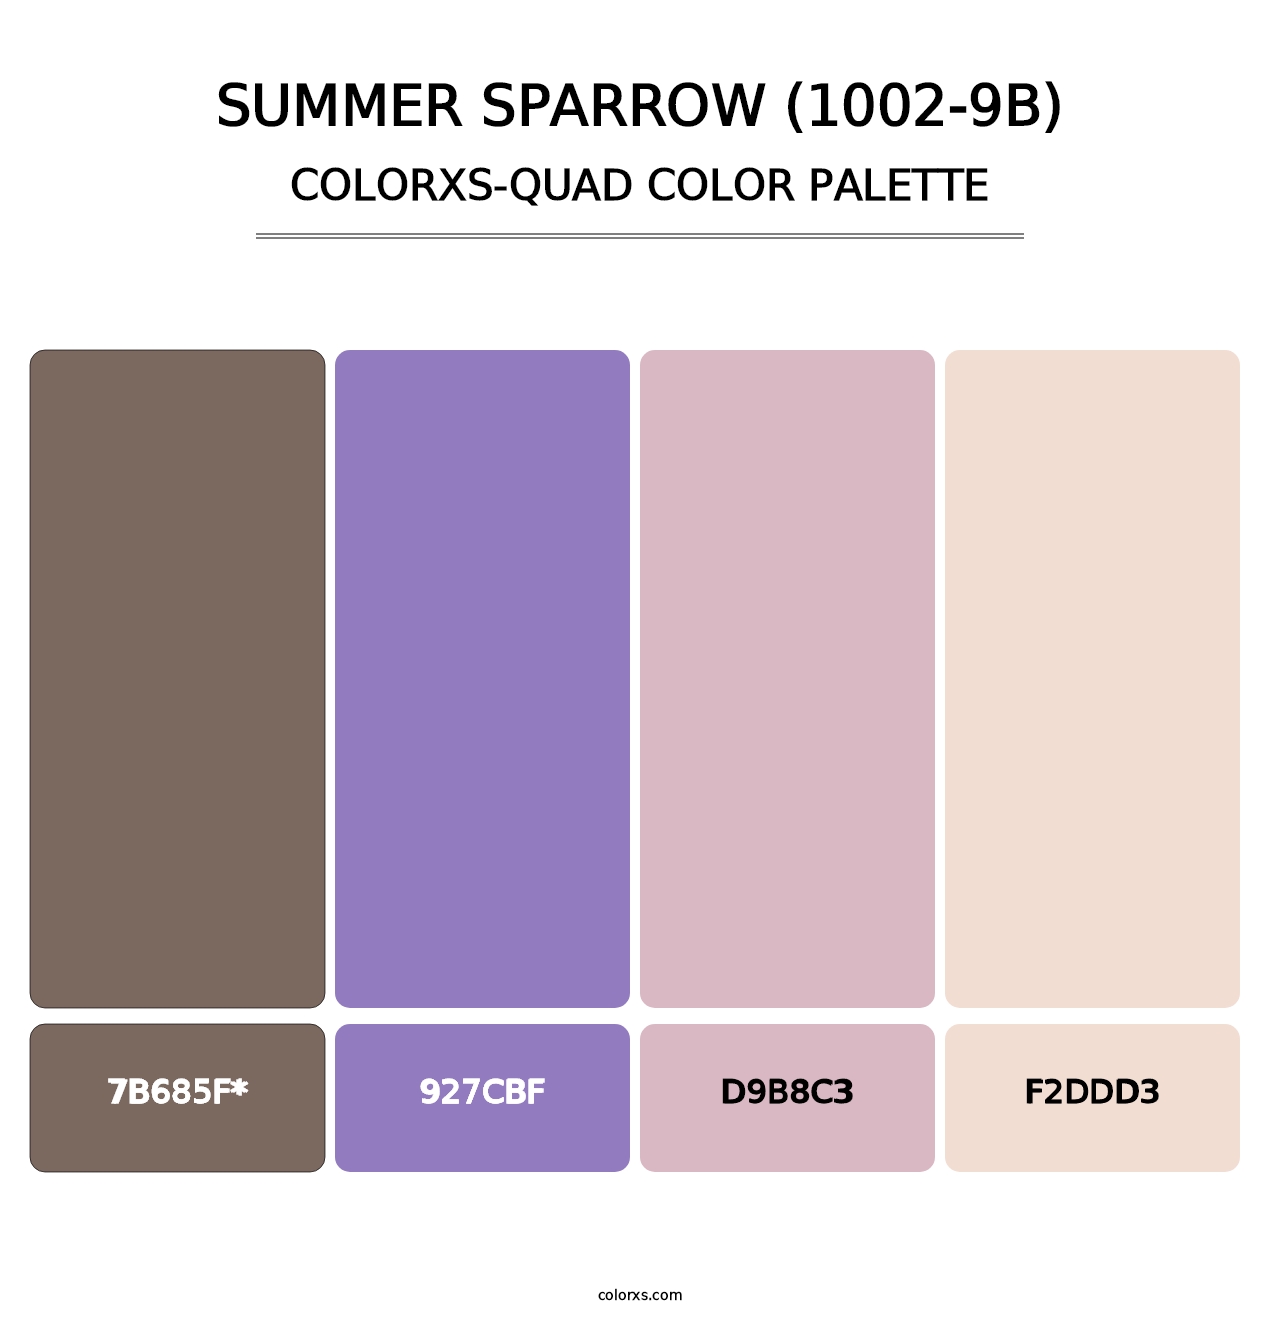 Summer Sparrow (1002-9B) - Colorxs Quad Palette